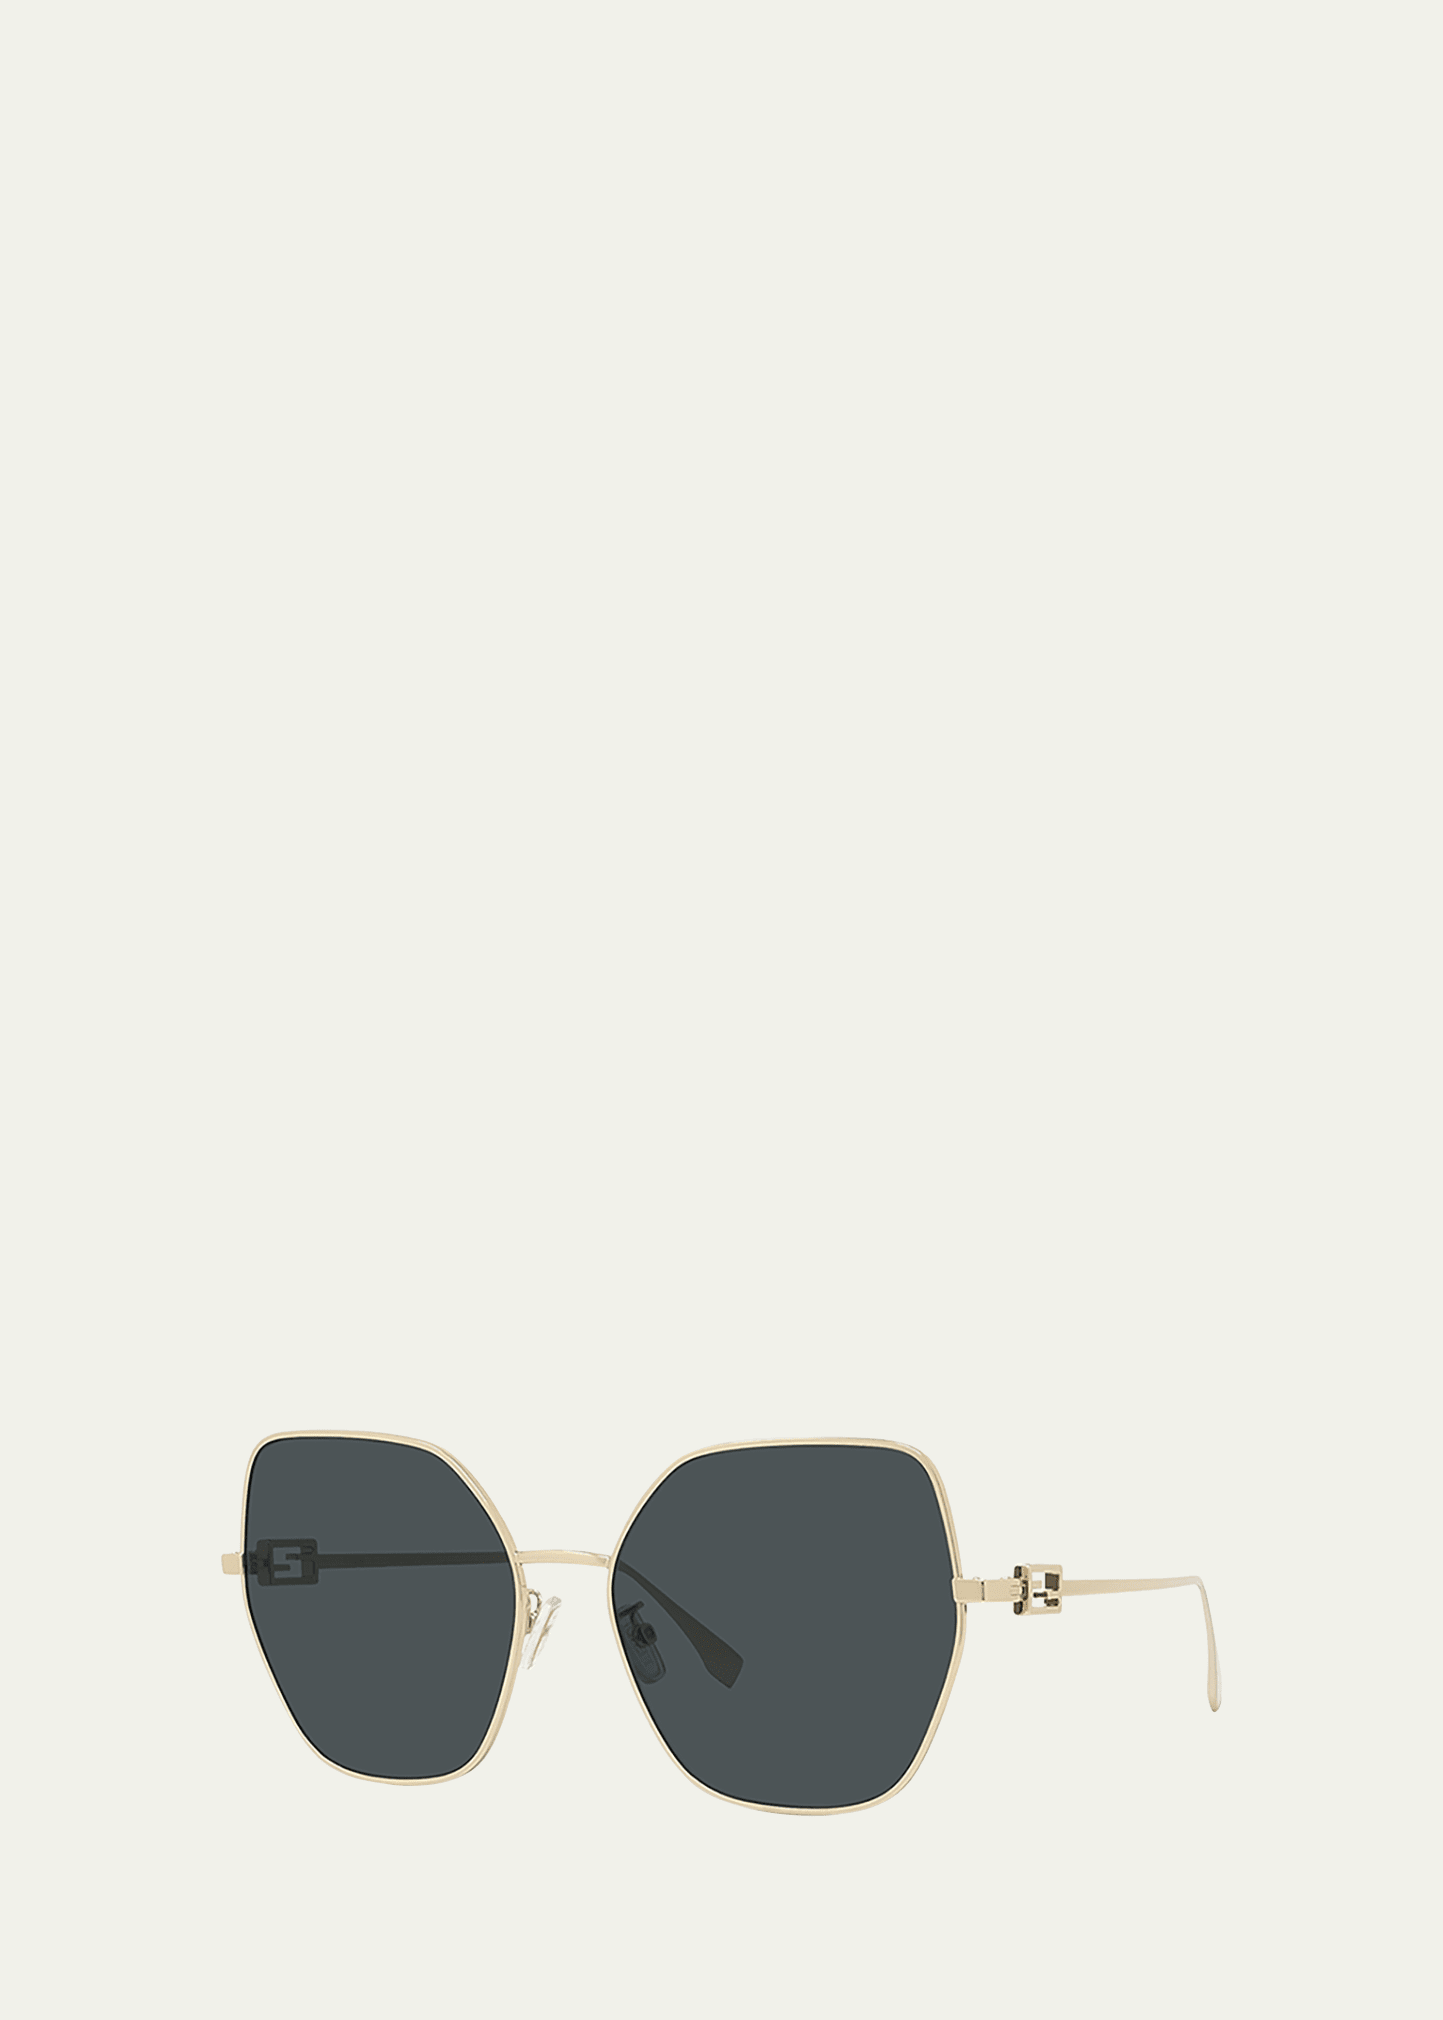 Fendi Ff Logo Metal Butterfly Sunglasses In Gold / Smoke